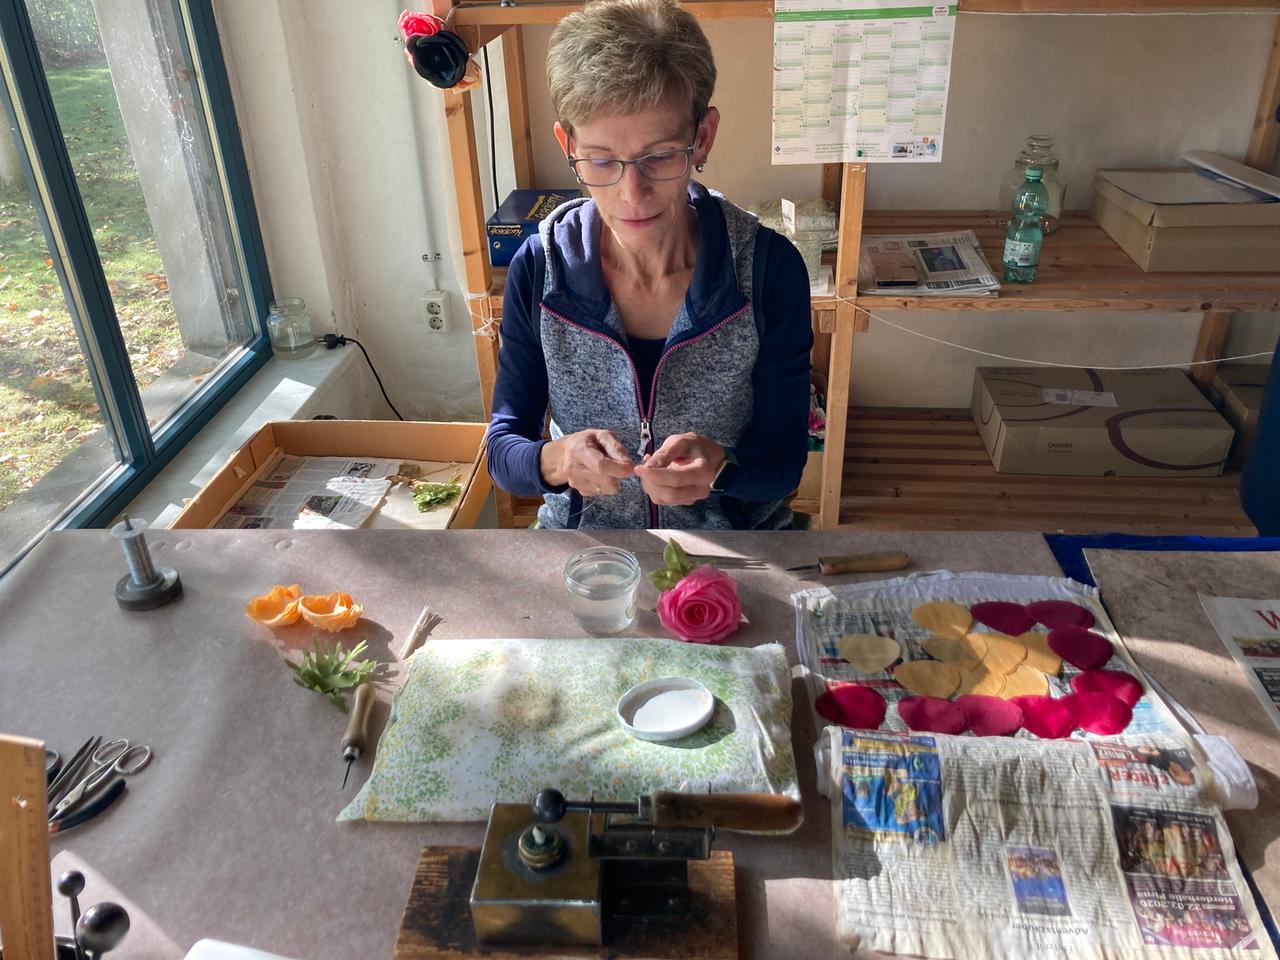 Eine Mitarbeiterin der Kunstblumenmanufaktur Heide Steyer sitzt an ihrem Arbeitstisch und fertigt Blüten aus Stoff. Vor ihr auf dem Tisch liegt ein Steckkissen, daneben Blütenblätter aus Stoff sowie bereits fertiggestellte Blumen. Die Frau trägt eine Brille und hat kurze graue Haare.